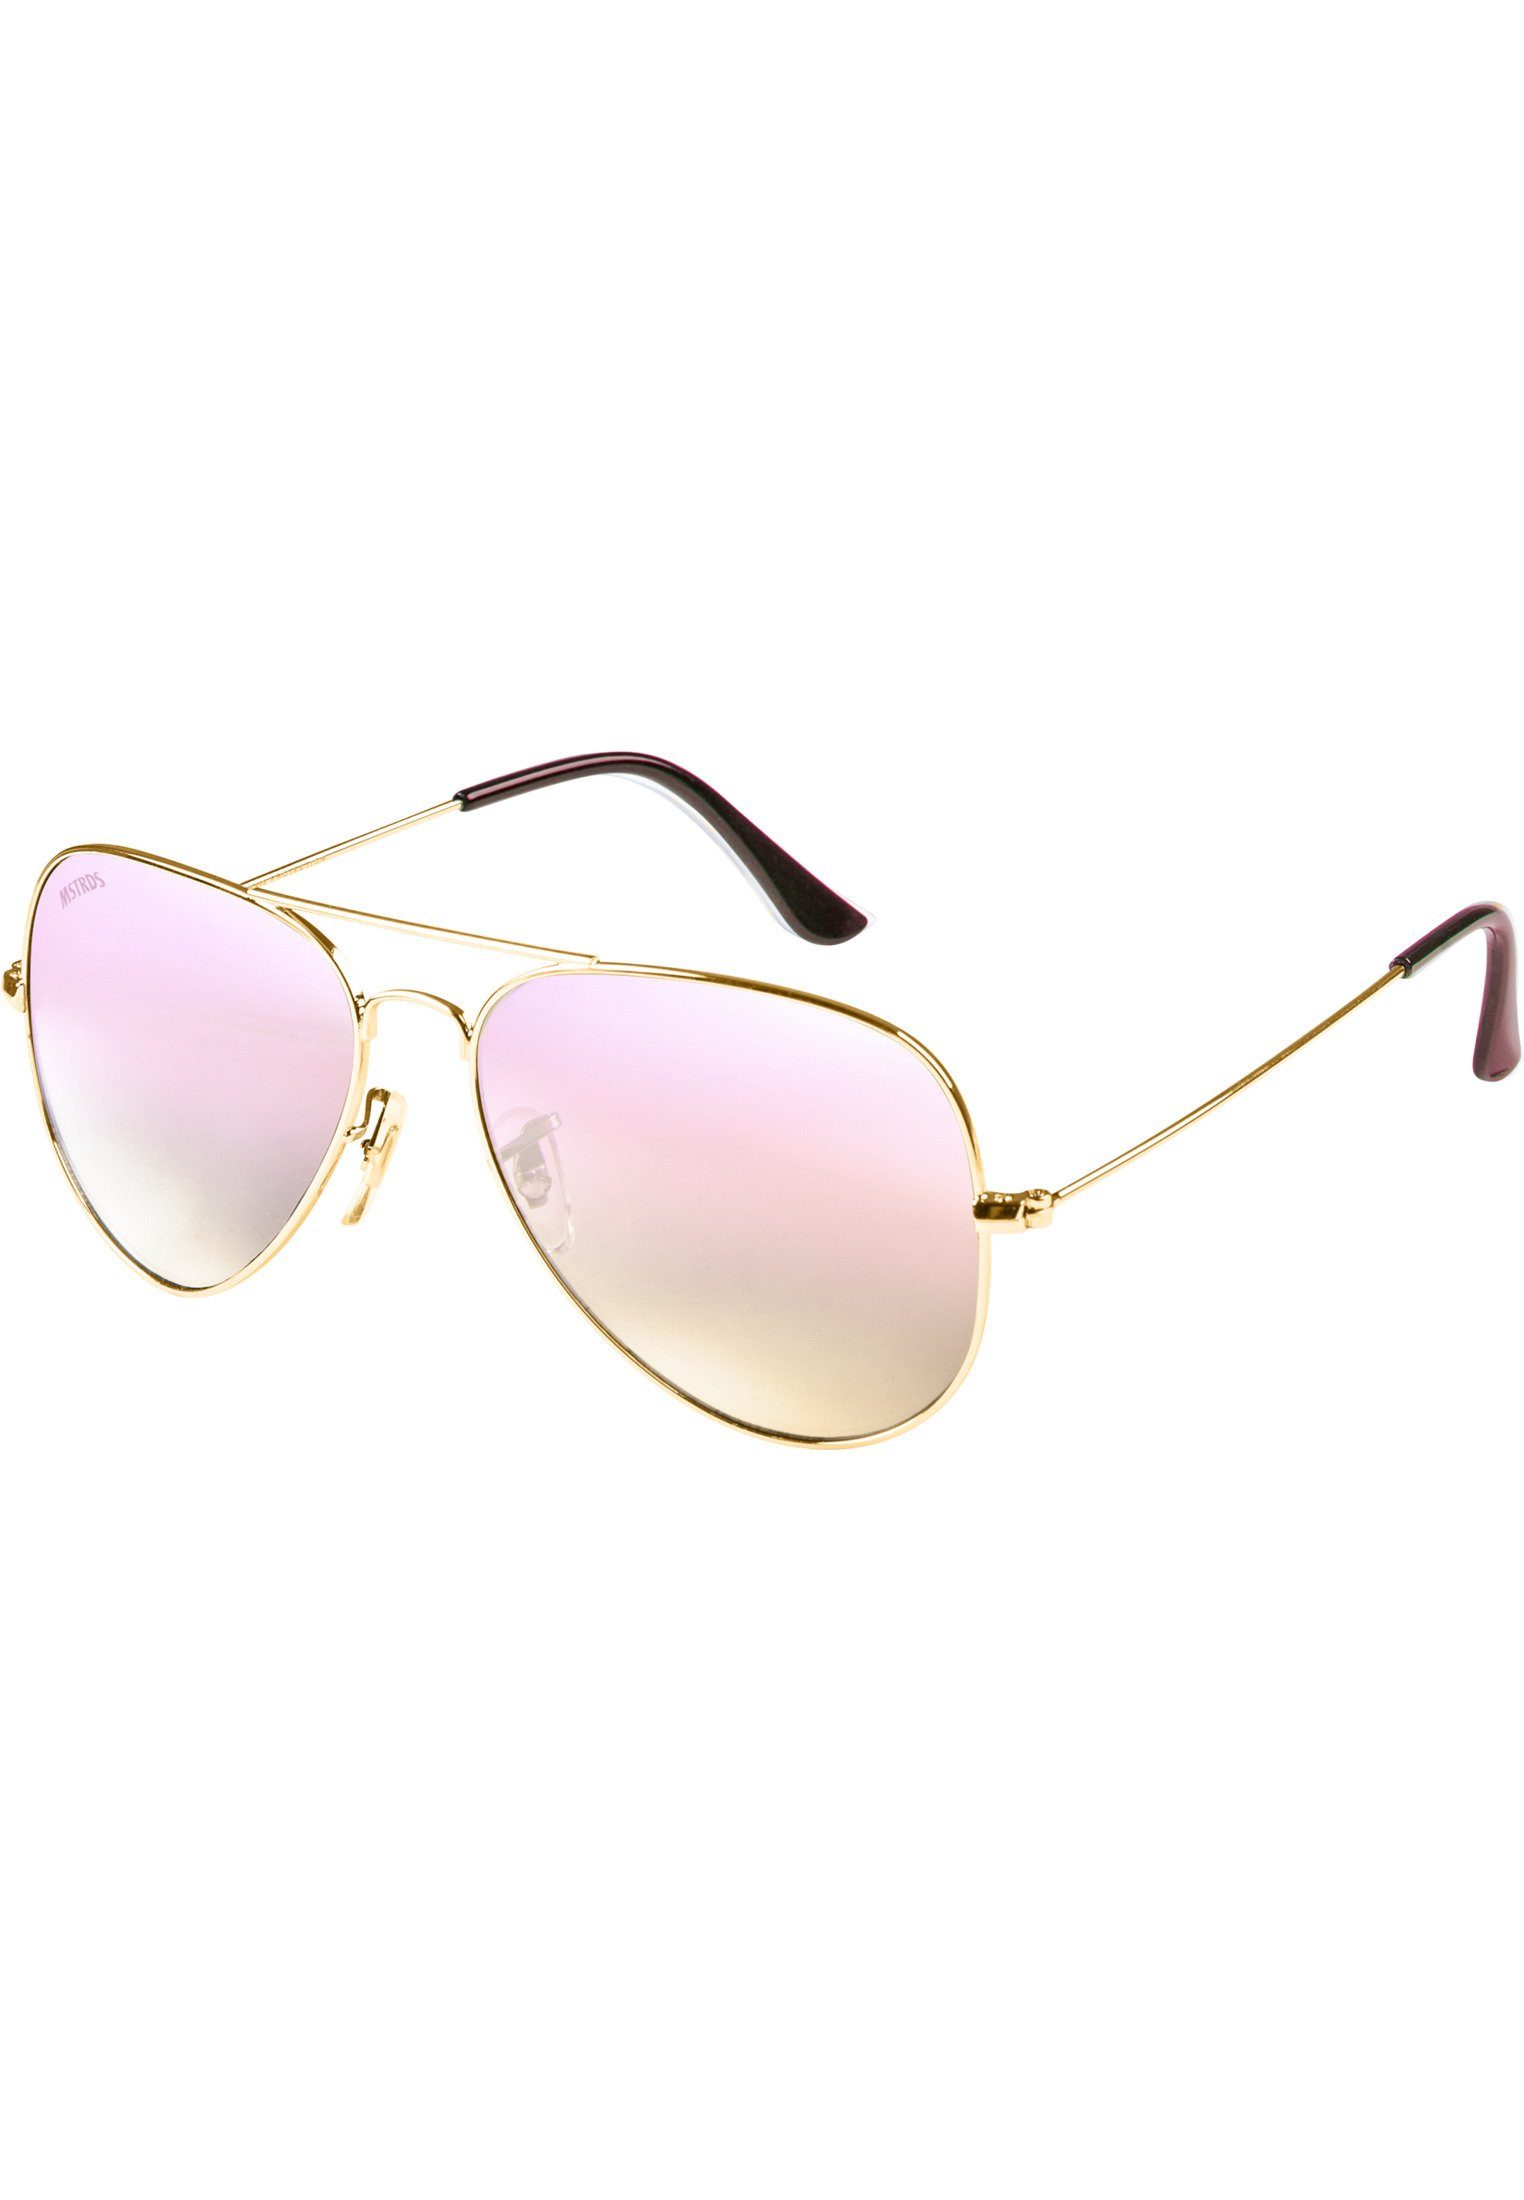 MSTRDS Sonnenbrille Accessoires Sunglasses PureAv gold/rosé Youth